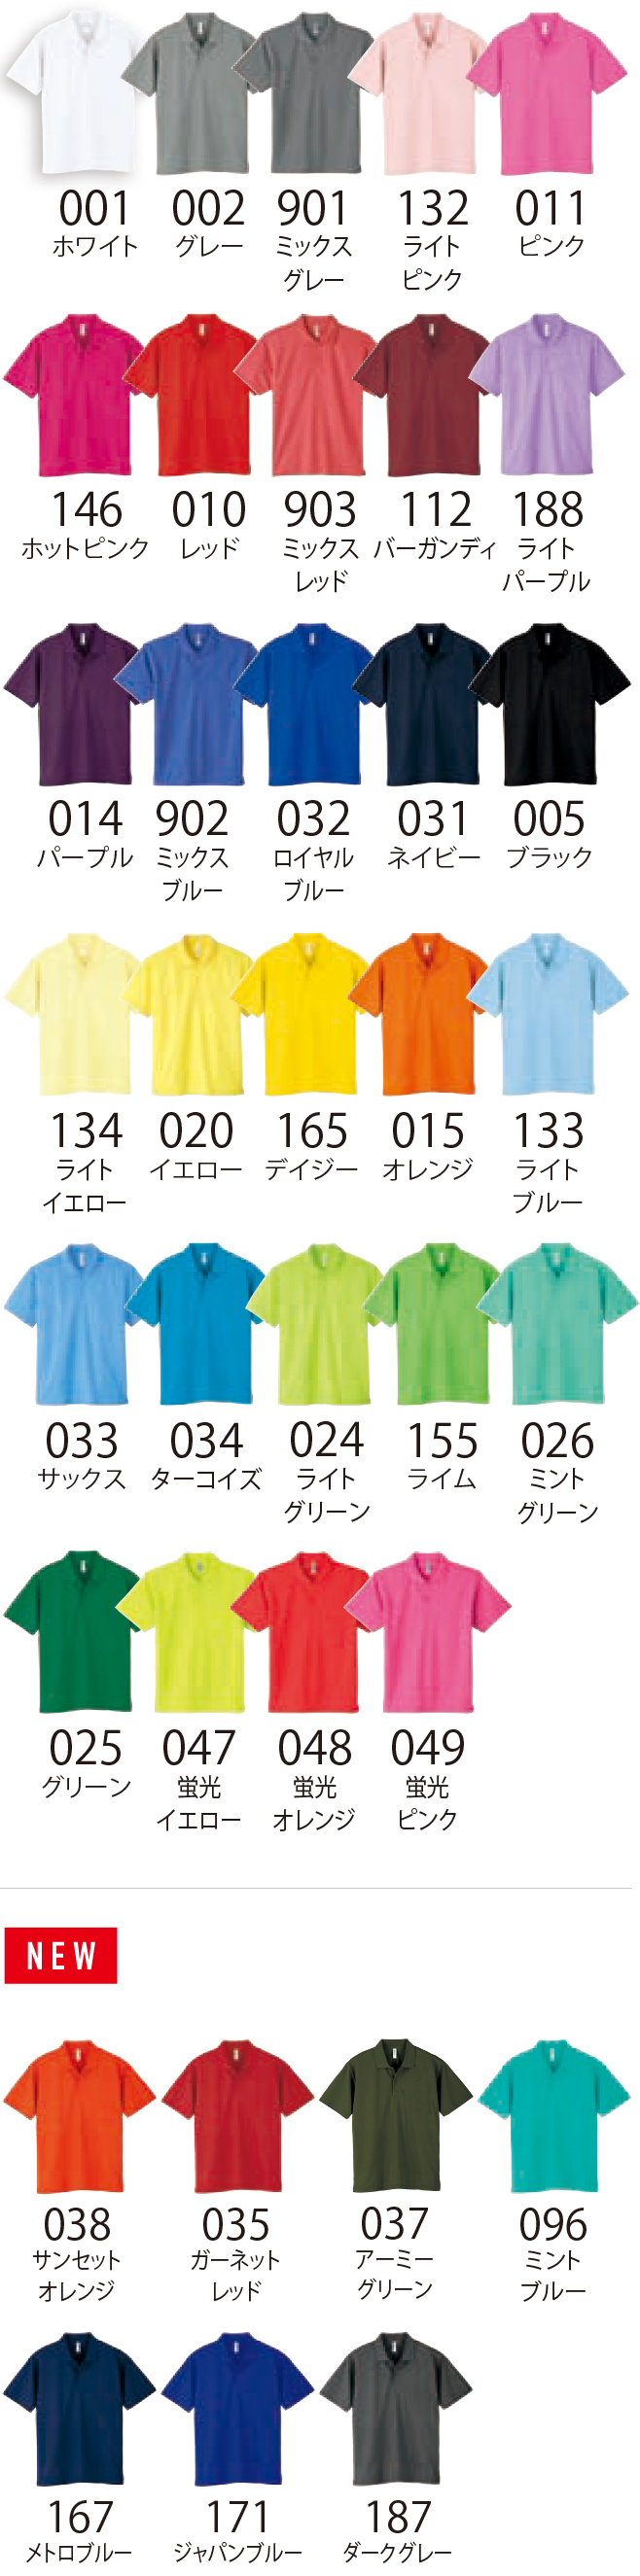 オリジナルポロシャツ 00302-ADP カラーラインナップ